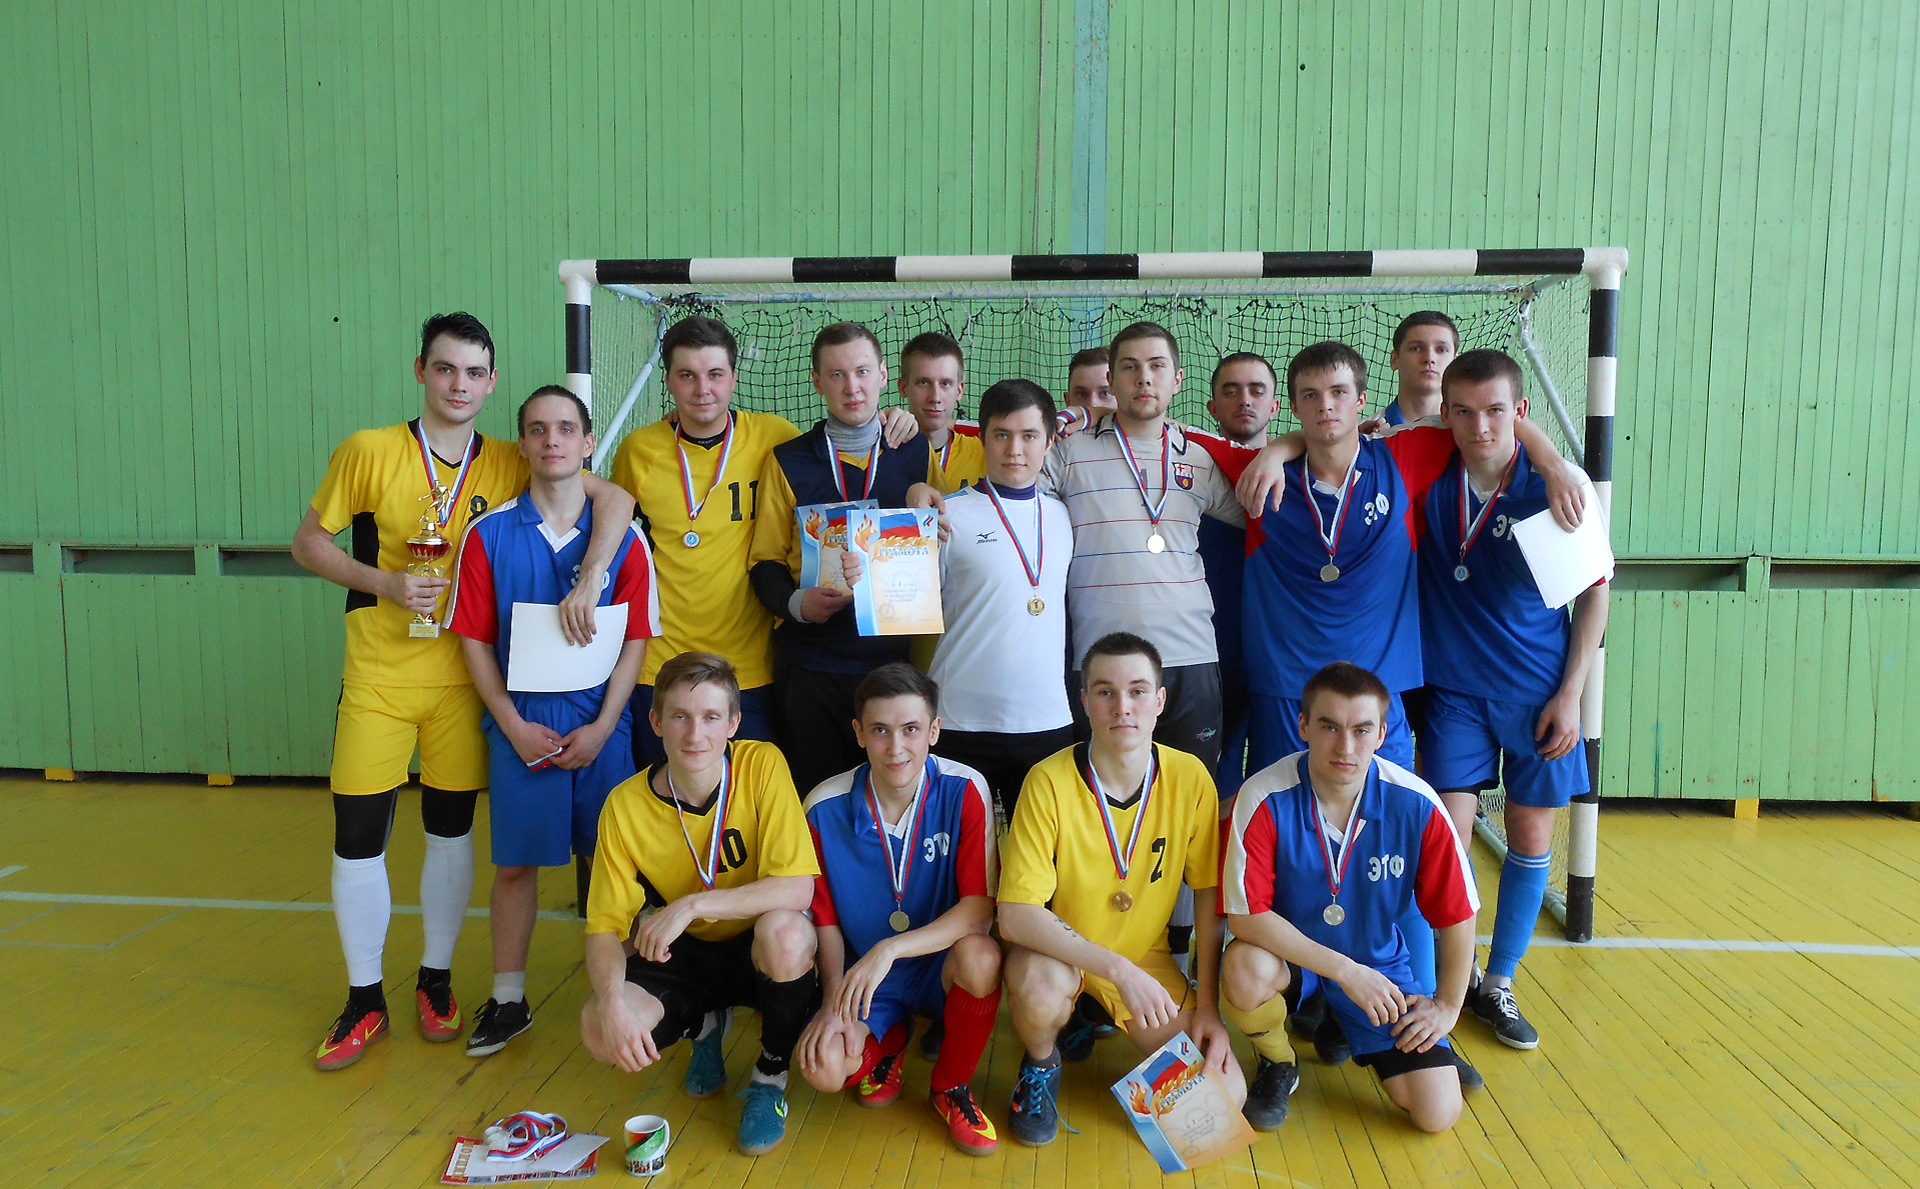 Факультет технологий, инжиниринга и дизайна стал чемпионом по мини-футболу ВятГУ